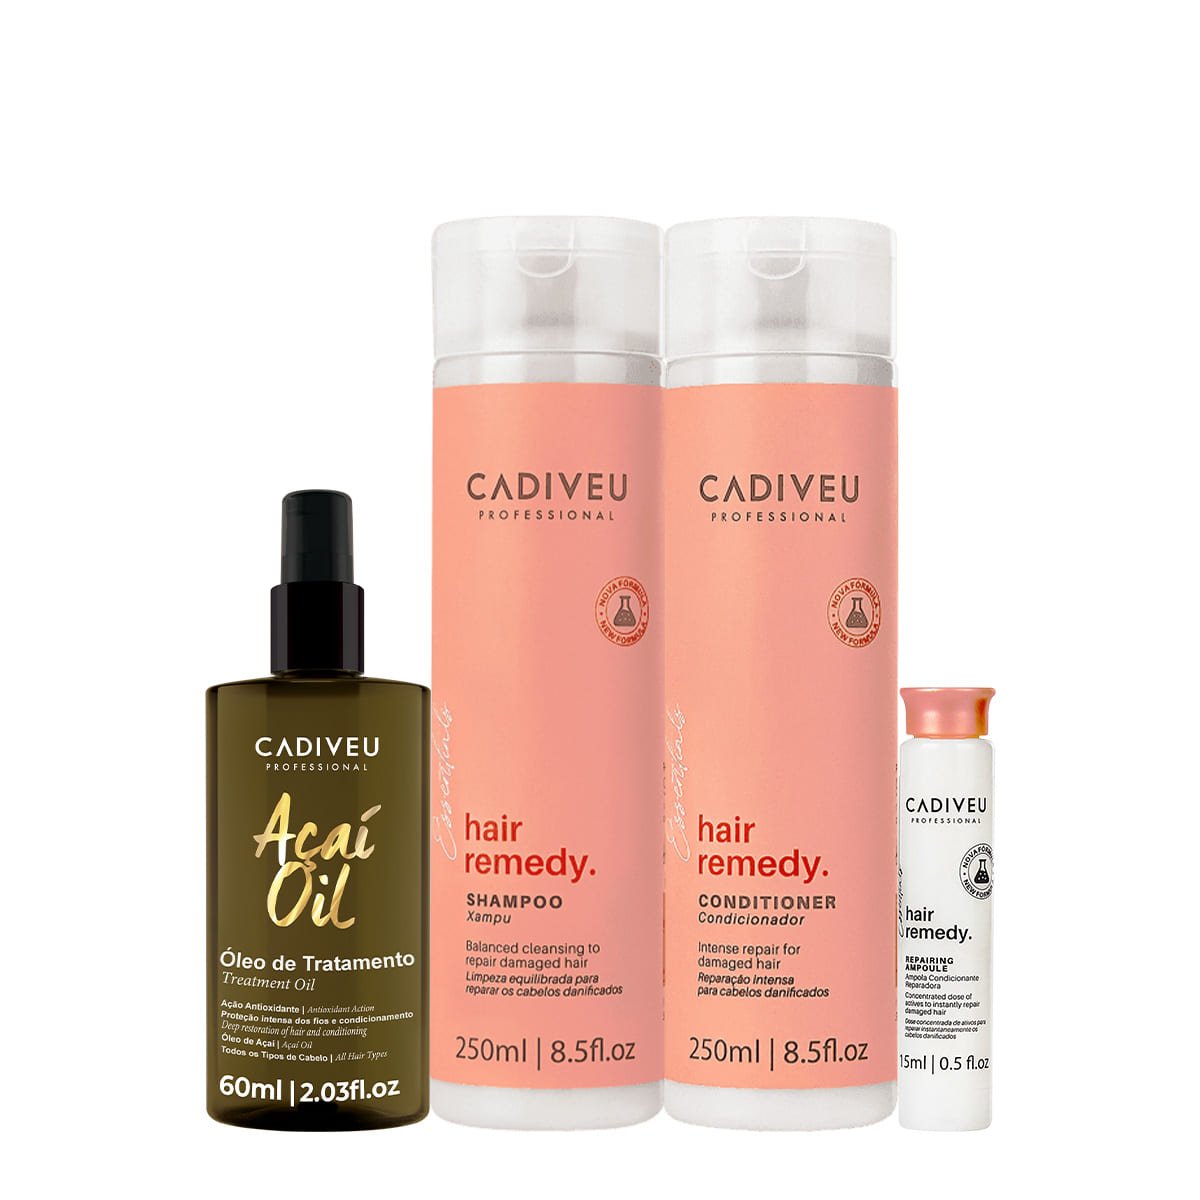 Kit Cadiveu Essentials Hair Remedy Shampoo Condicionador Ampola e Acai Oil 60 (4 produtos) ÚNICO 1